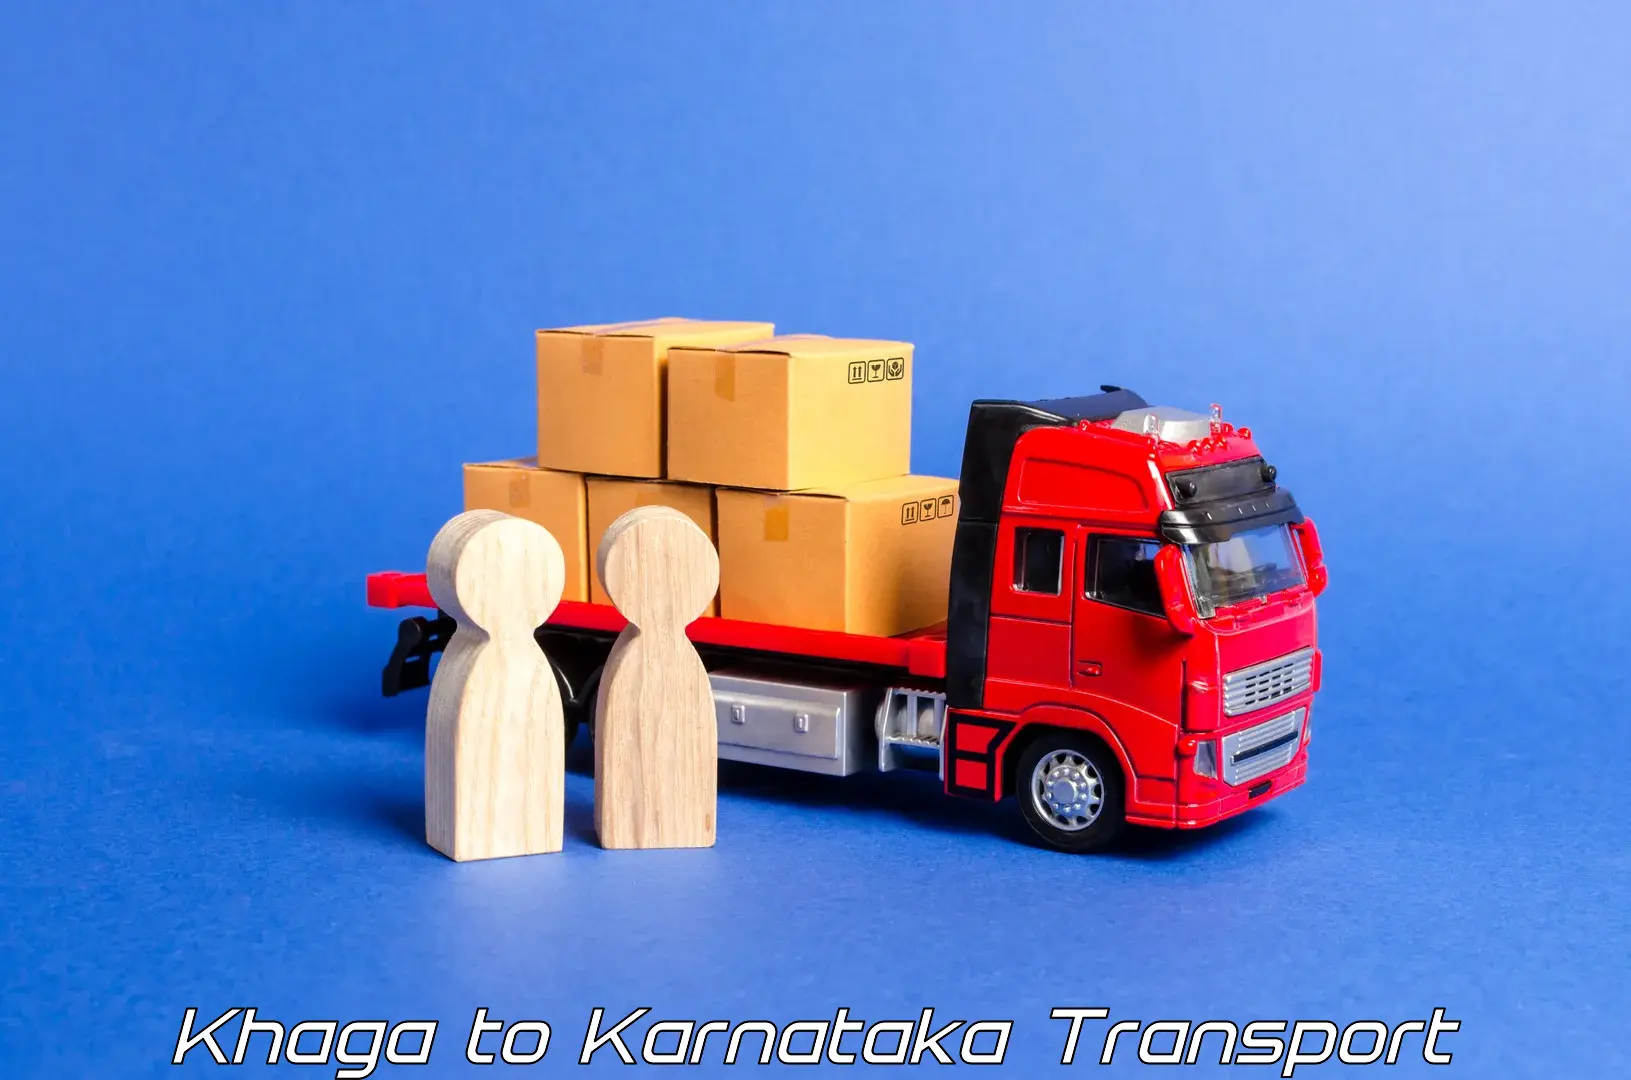 Daily parcel service transport Khaga to Gadag